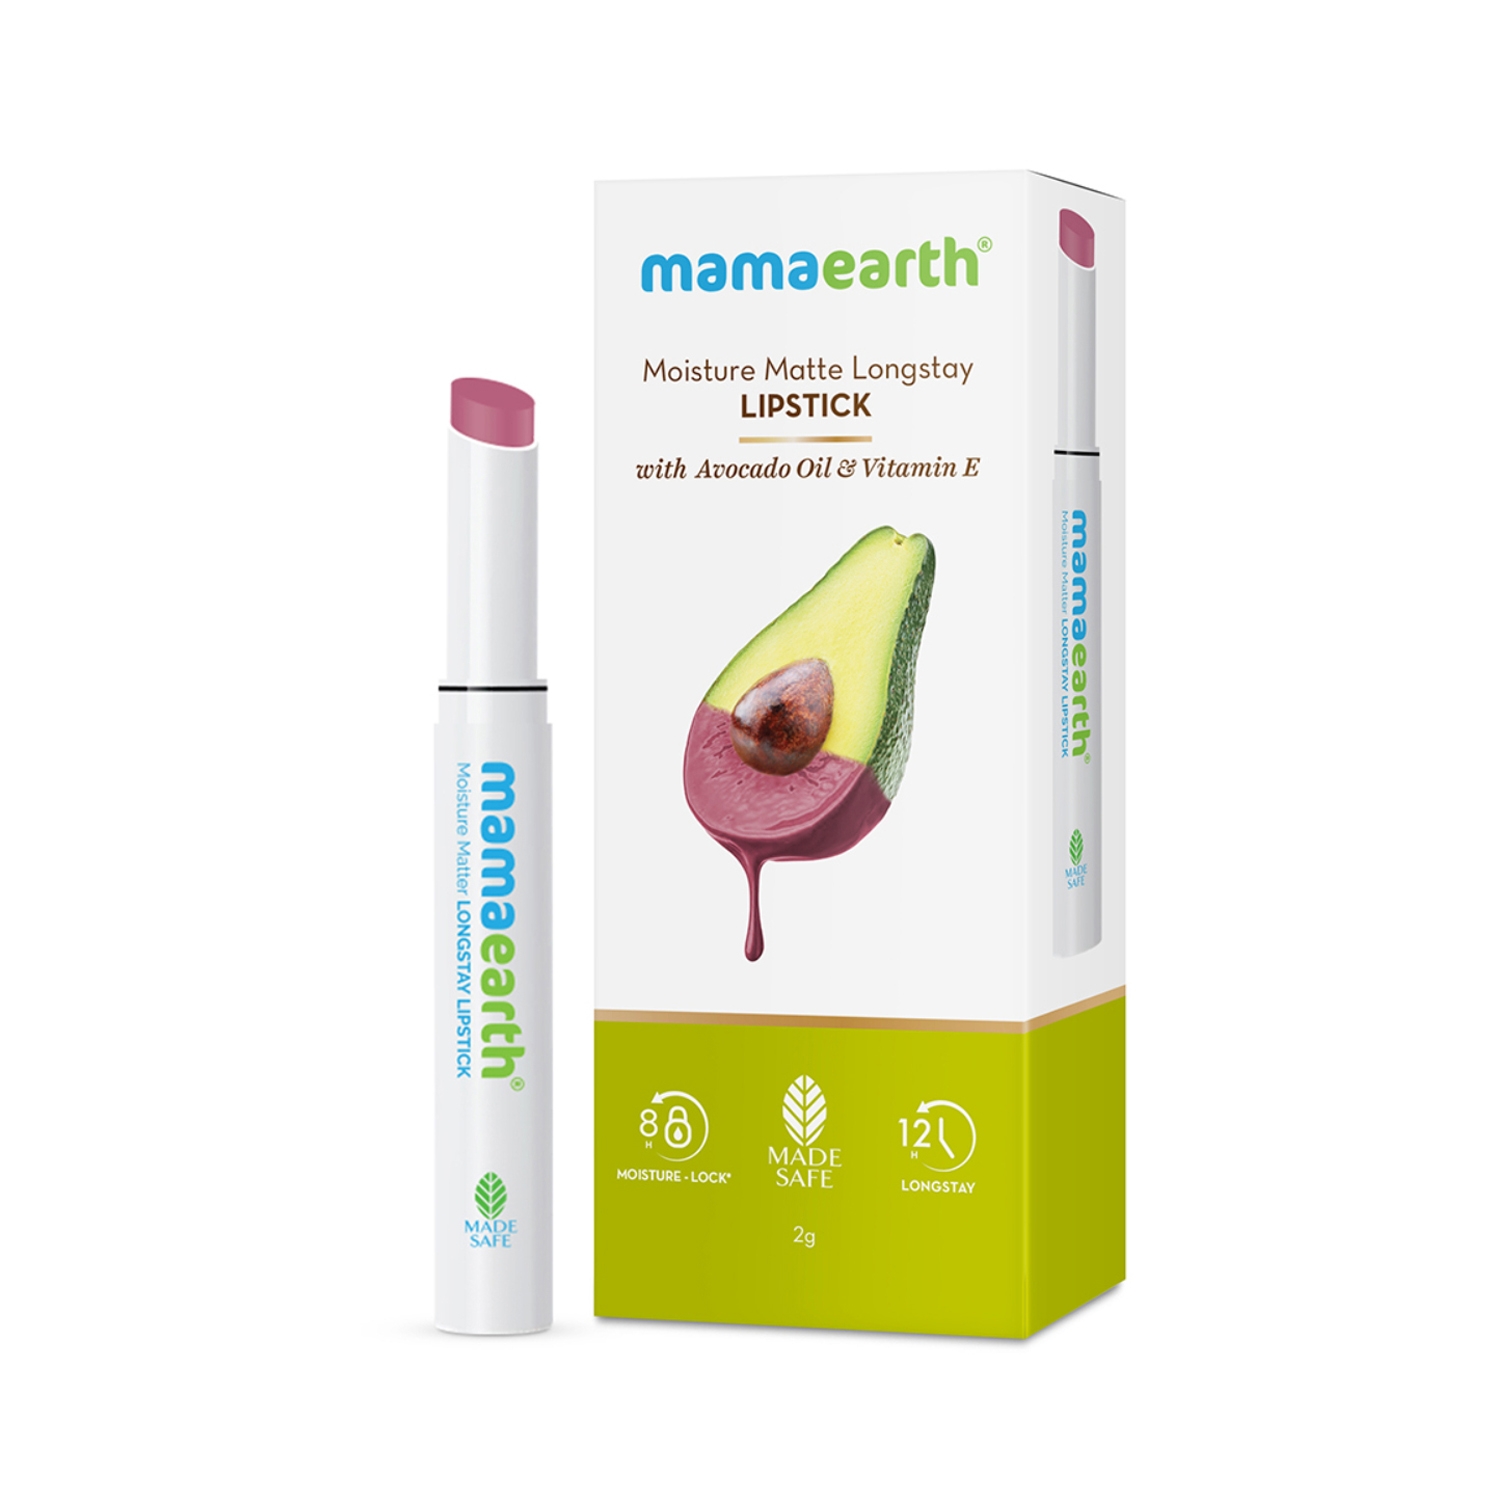 Mamaearth Moisture Matte Longstay Lipstick With Avocado Oil & Vitamin E - 08 Pink Tulip (2g)